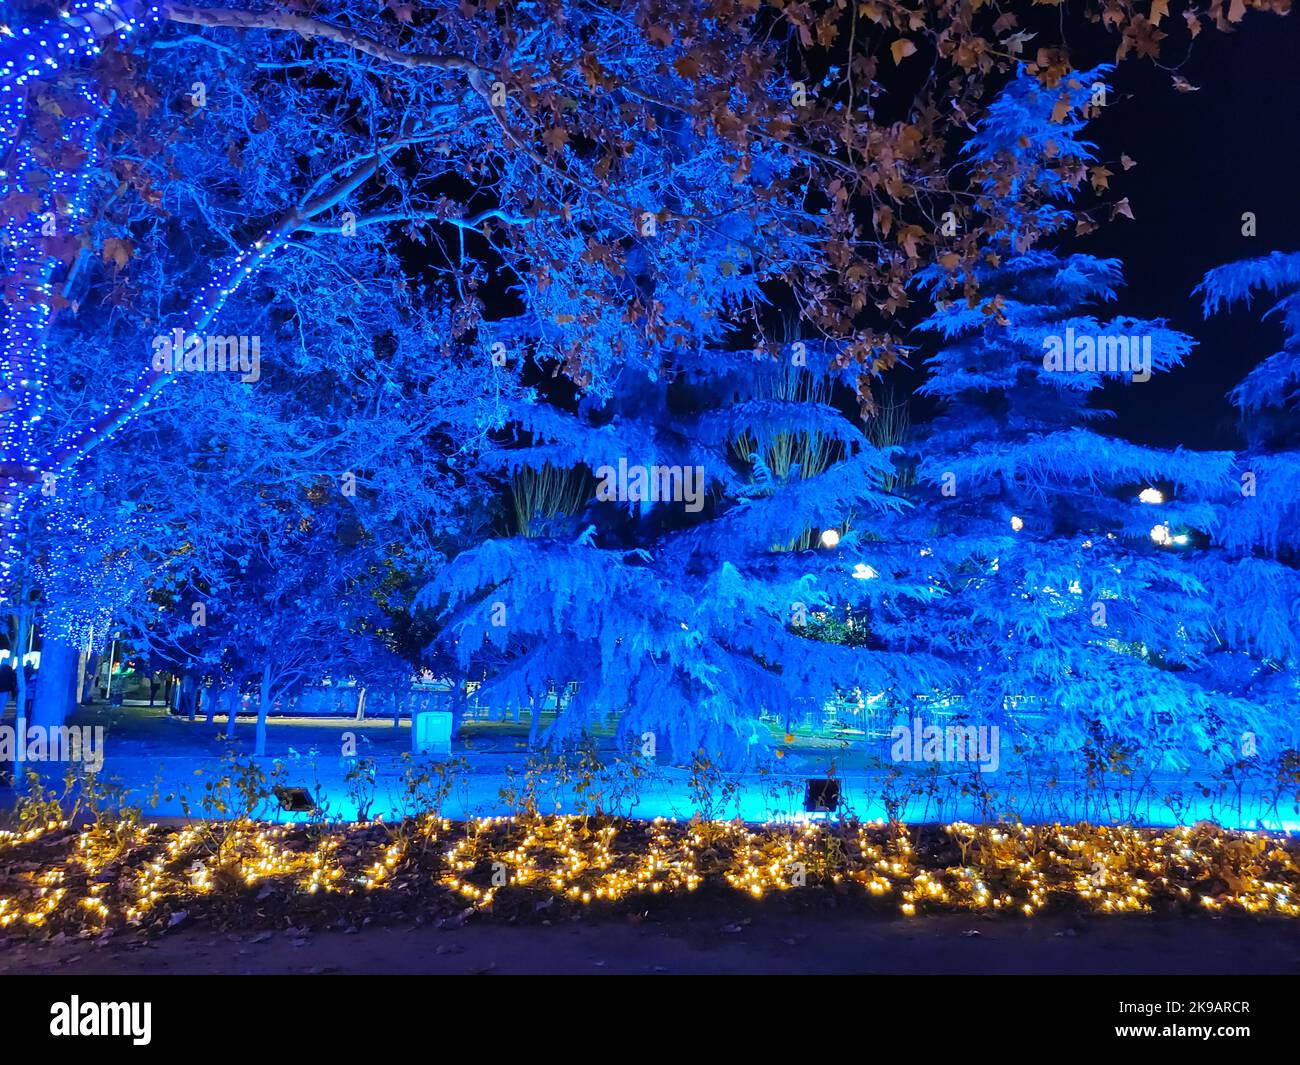 Bäume, die nachts in der weihnachtsdekoration von torrejon de ardoz, madrid, spanien, blau beleuchtet sind Stockfoto